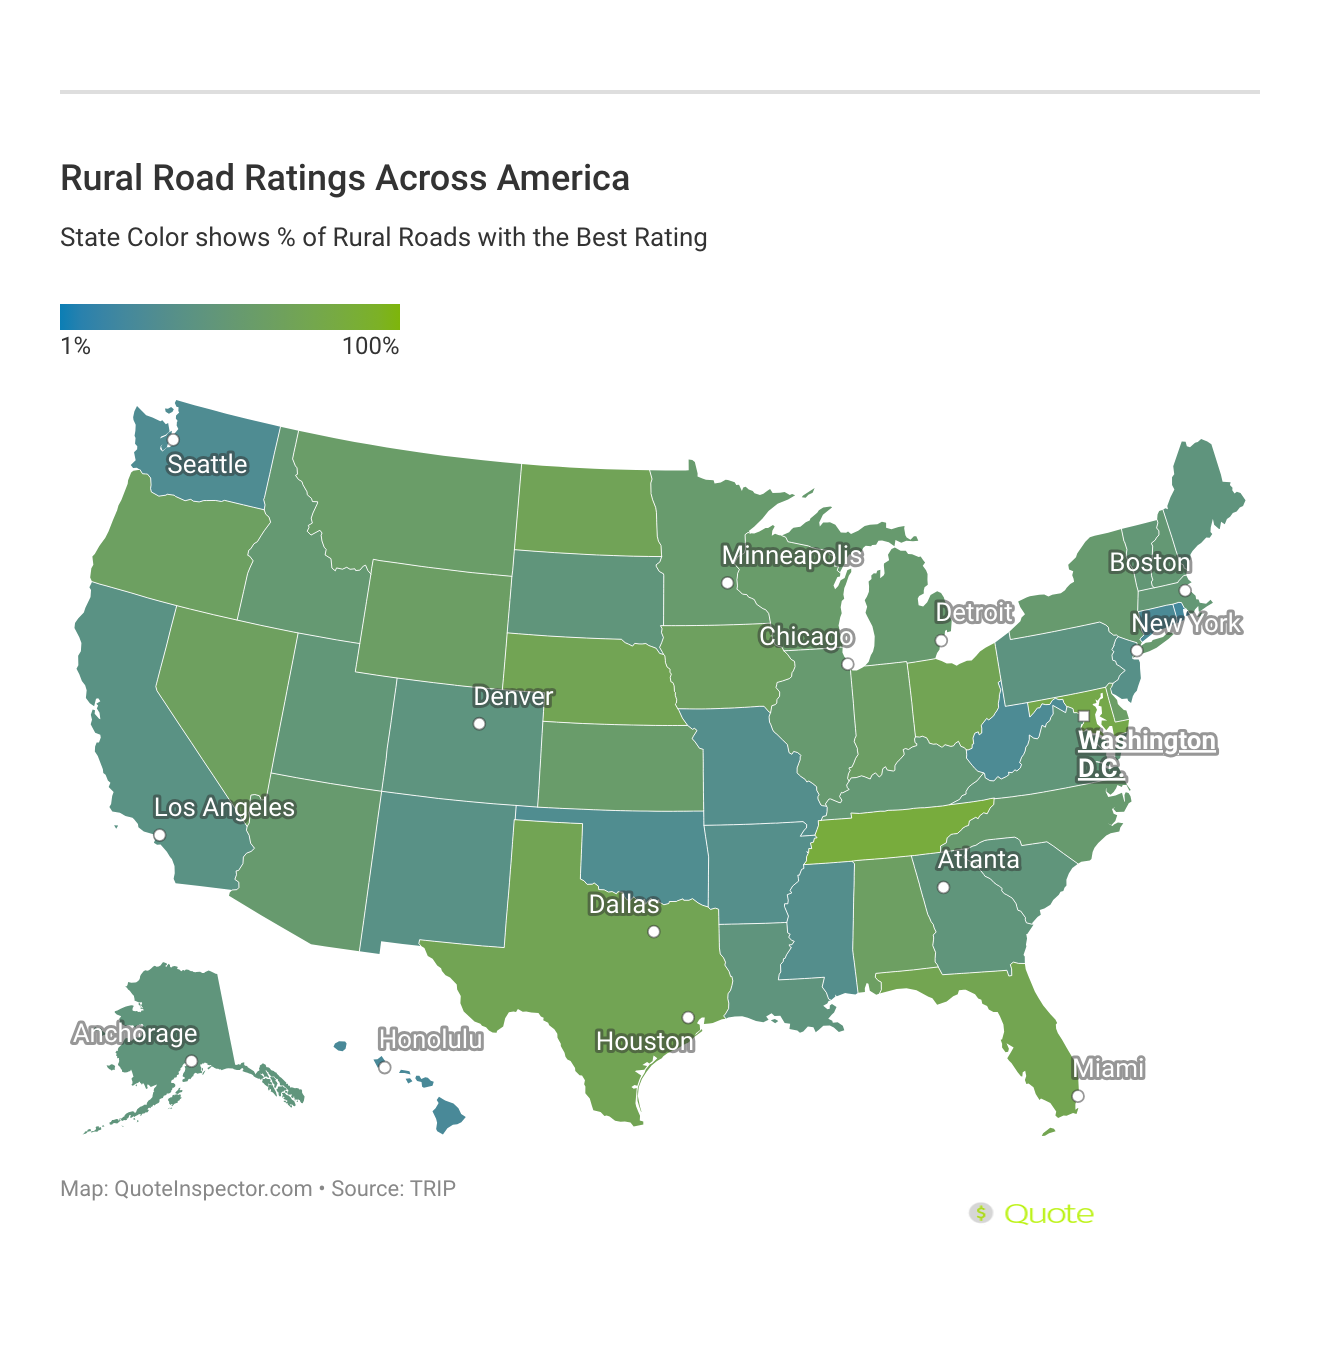 <h3>Rural Road Ratings Across America</h3>